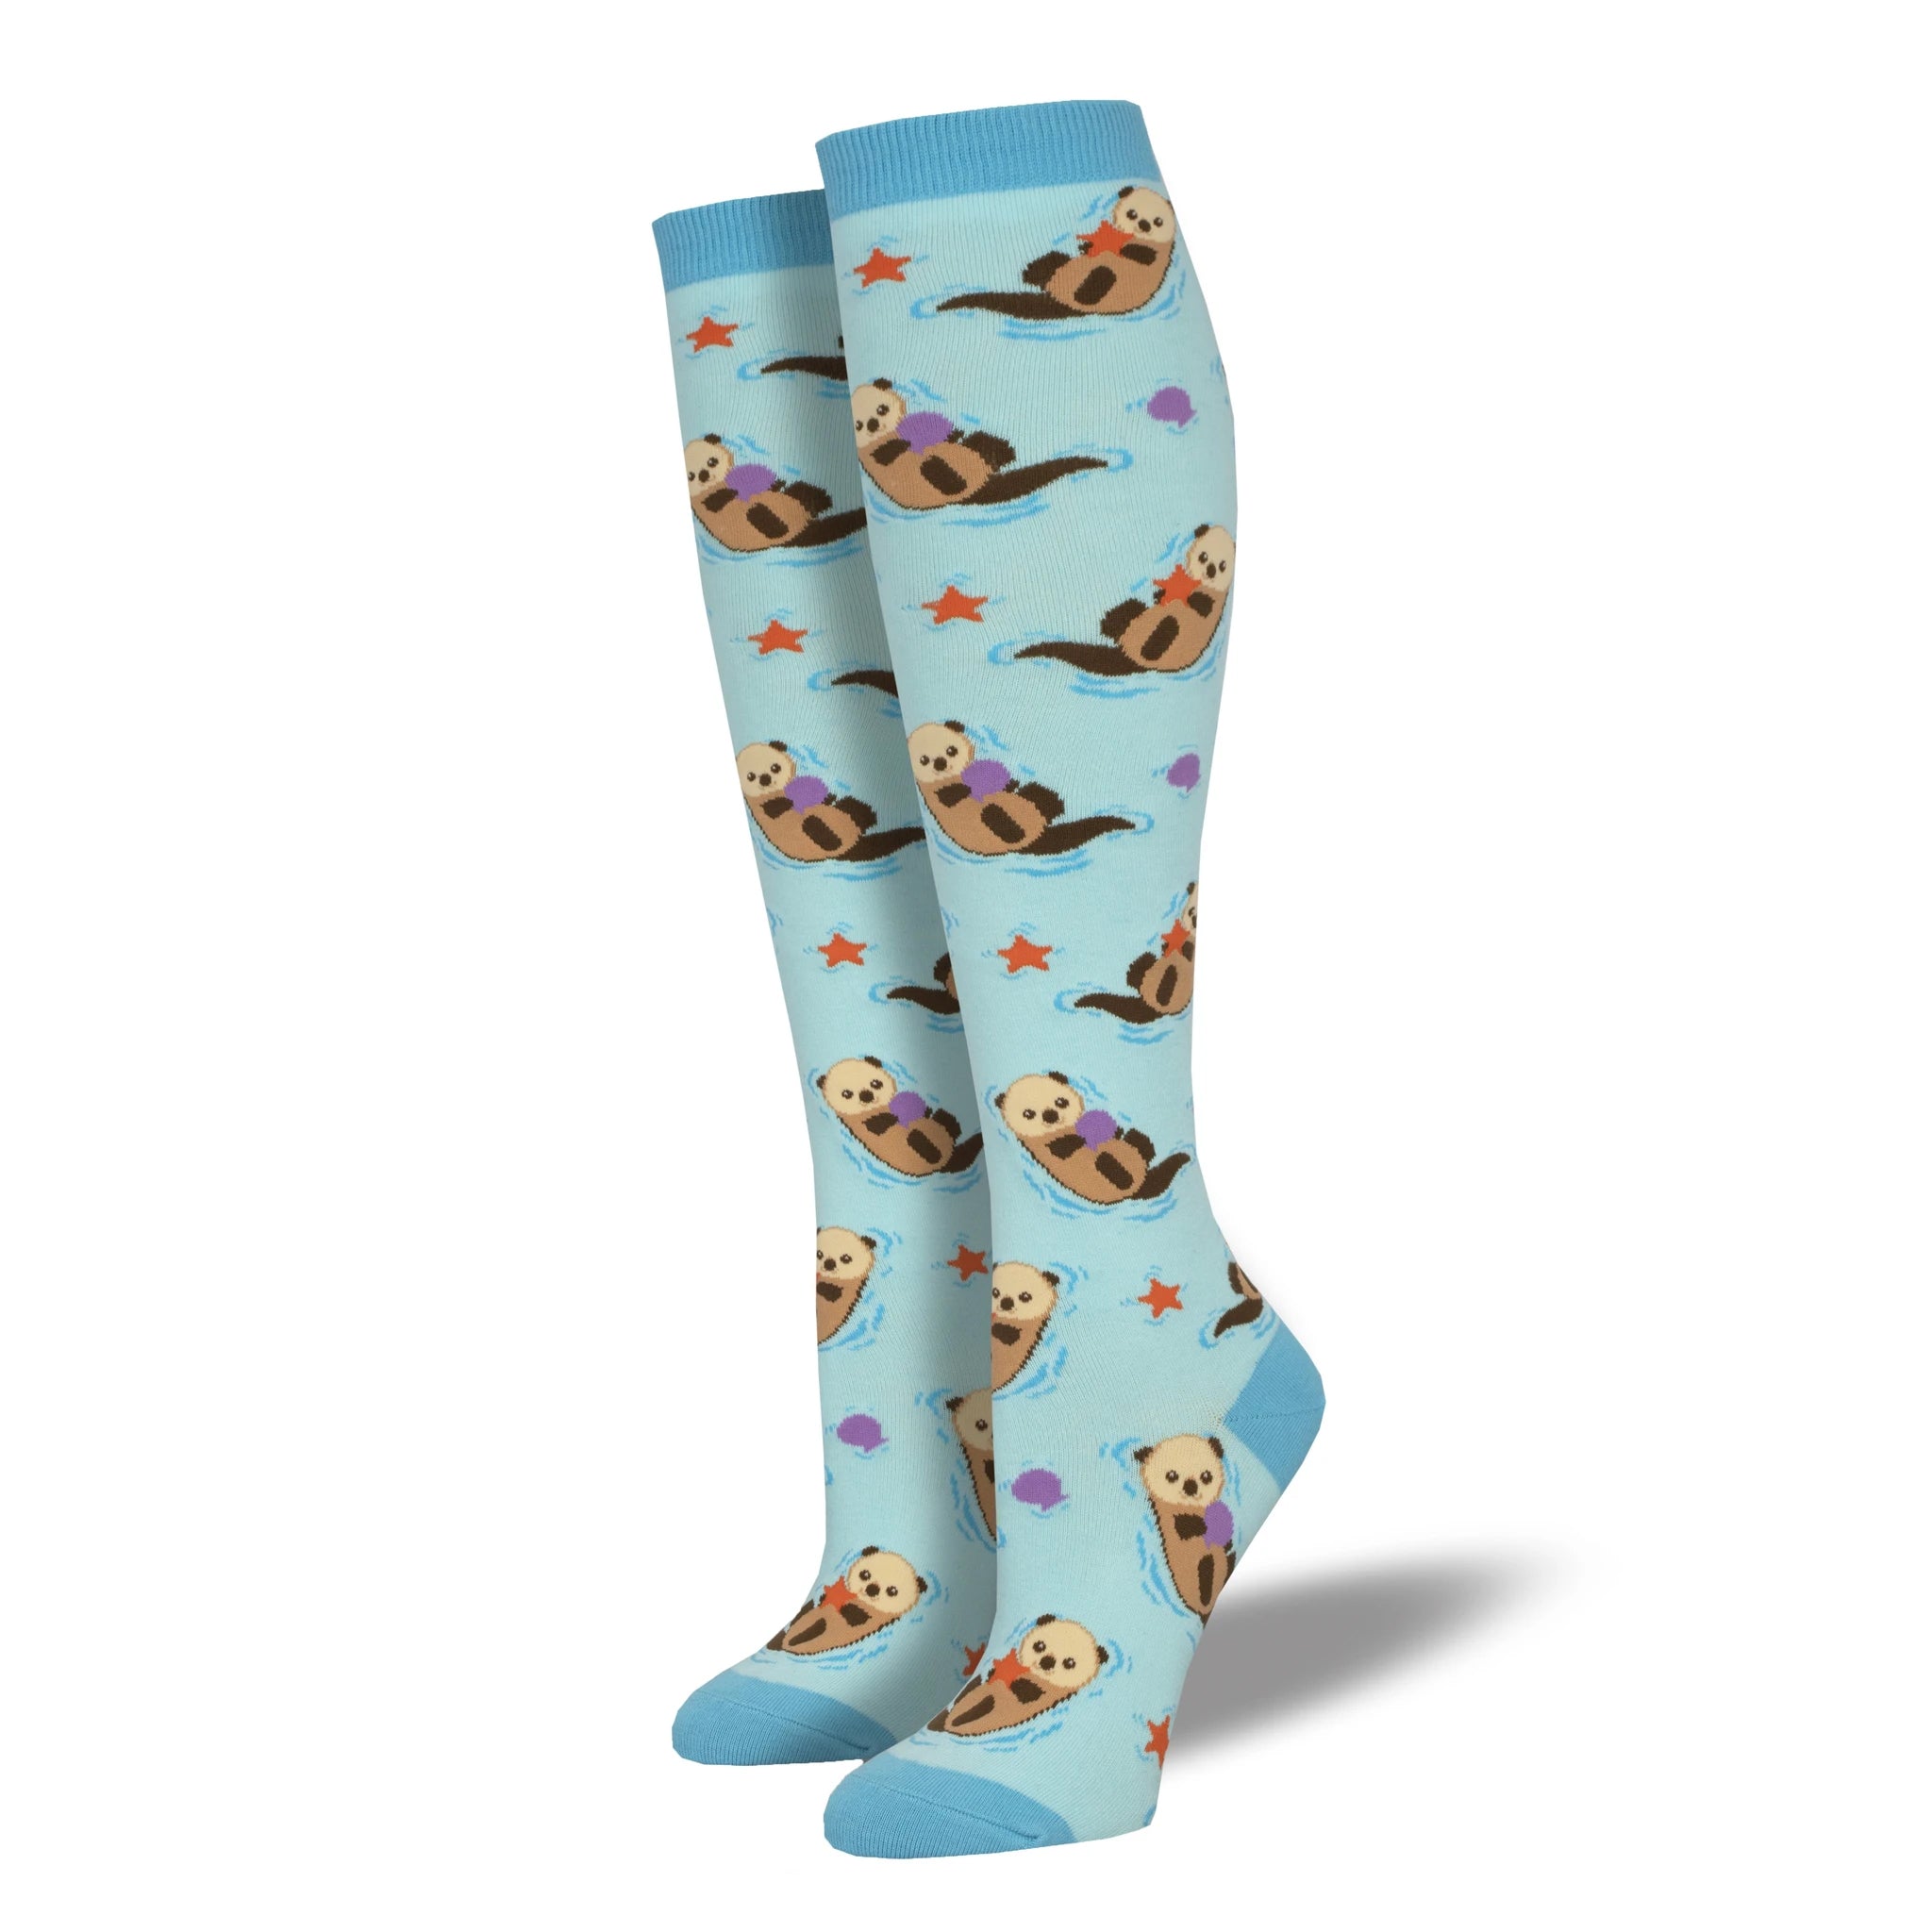 Otter Spotter Women's Blue Knee High Socks